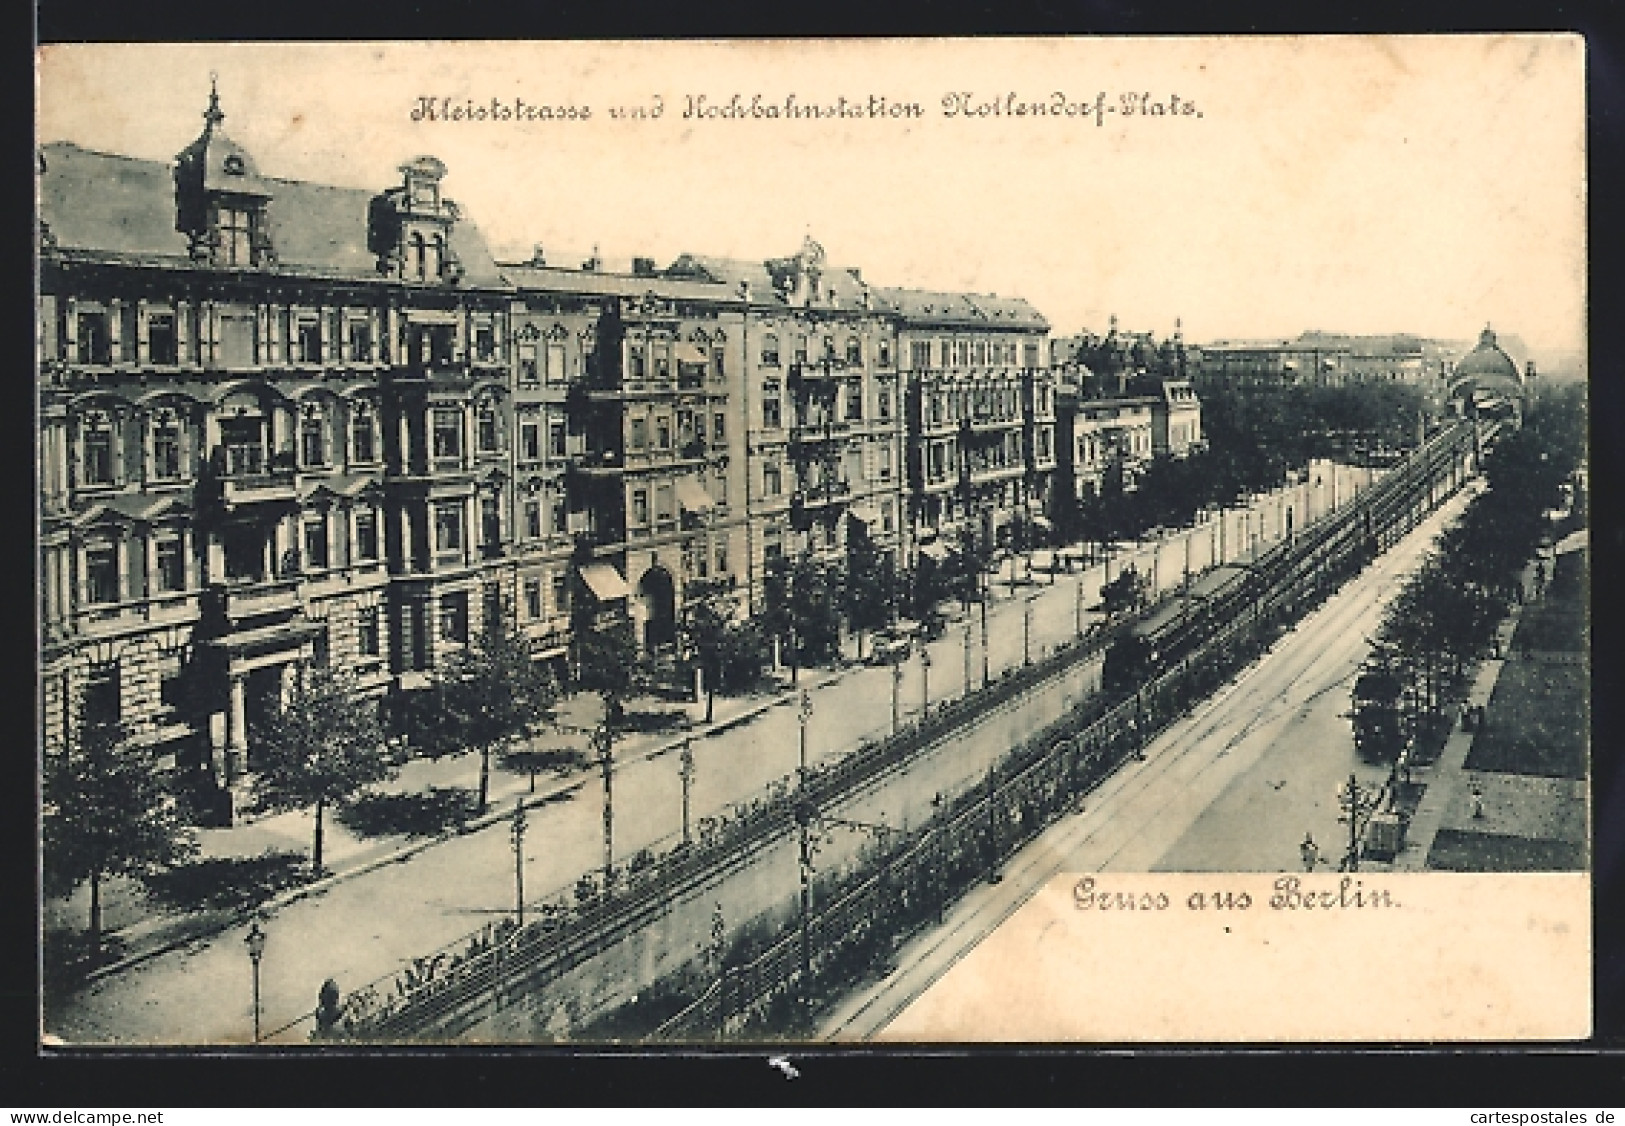 AK Berlin-Schöneberg, Kleiststrasse Und Hochbahnstation Nollendorf-Platz  - Schoeneberg